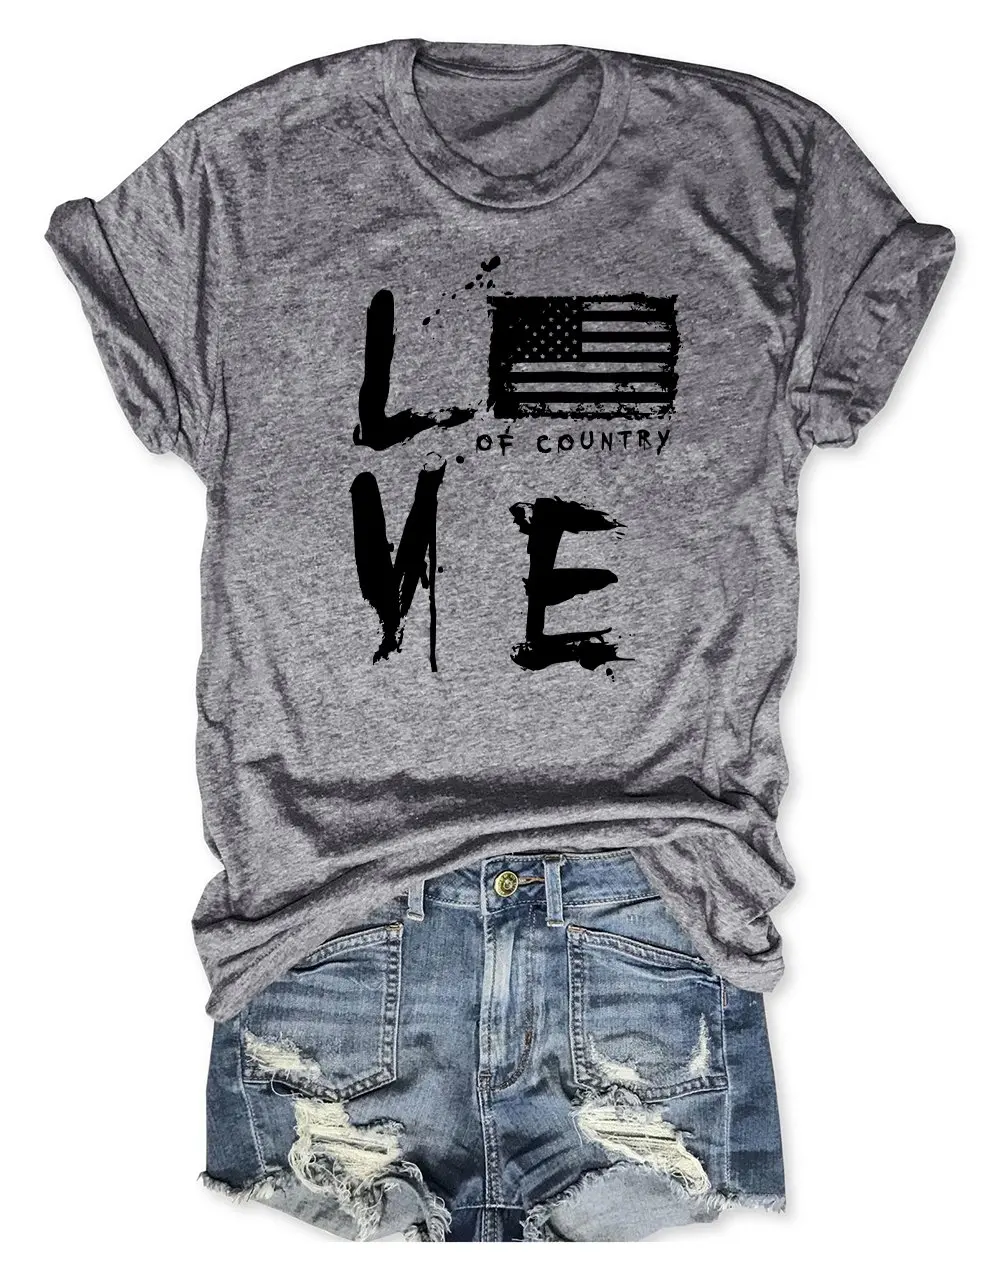 

Rheaclot, Женская хлопковая футболка с надписью Love Of Country с американским флагом, женские топы с графическим рисунком